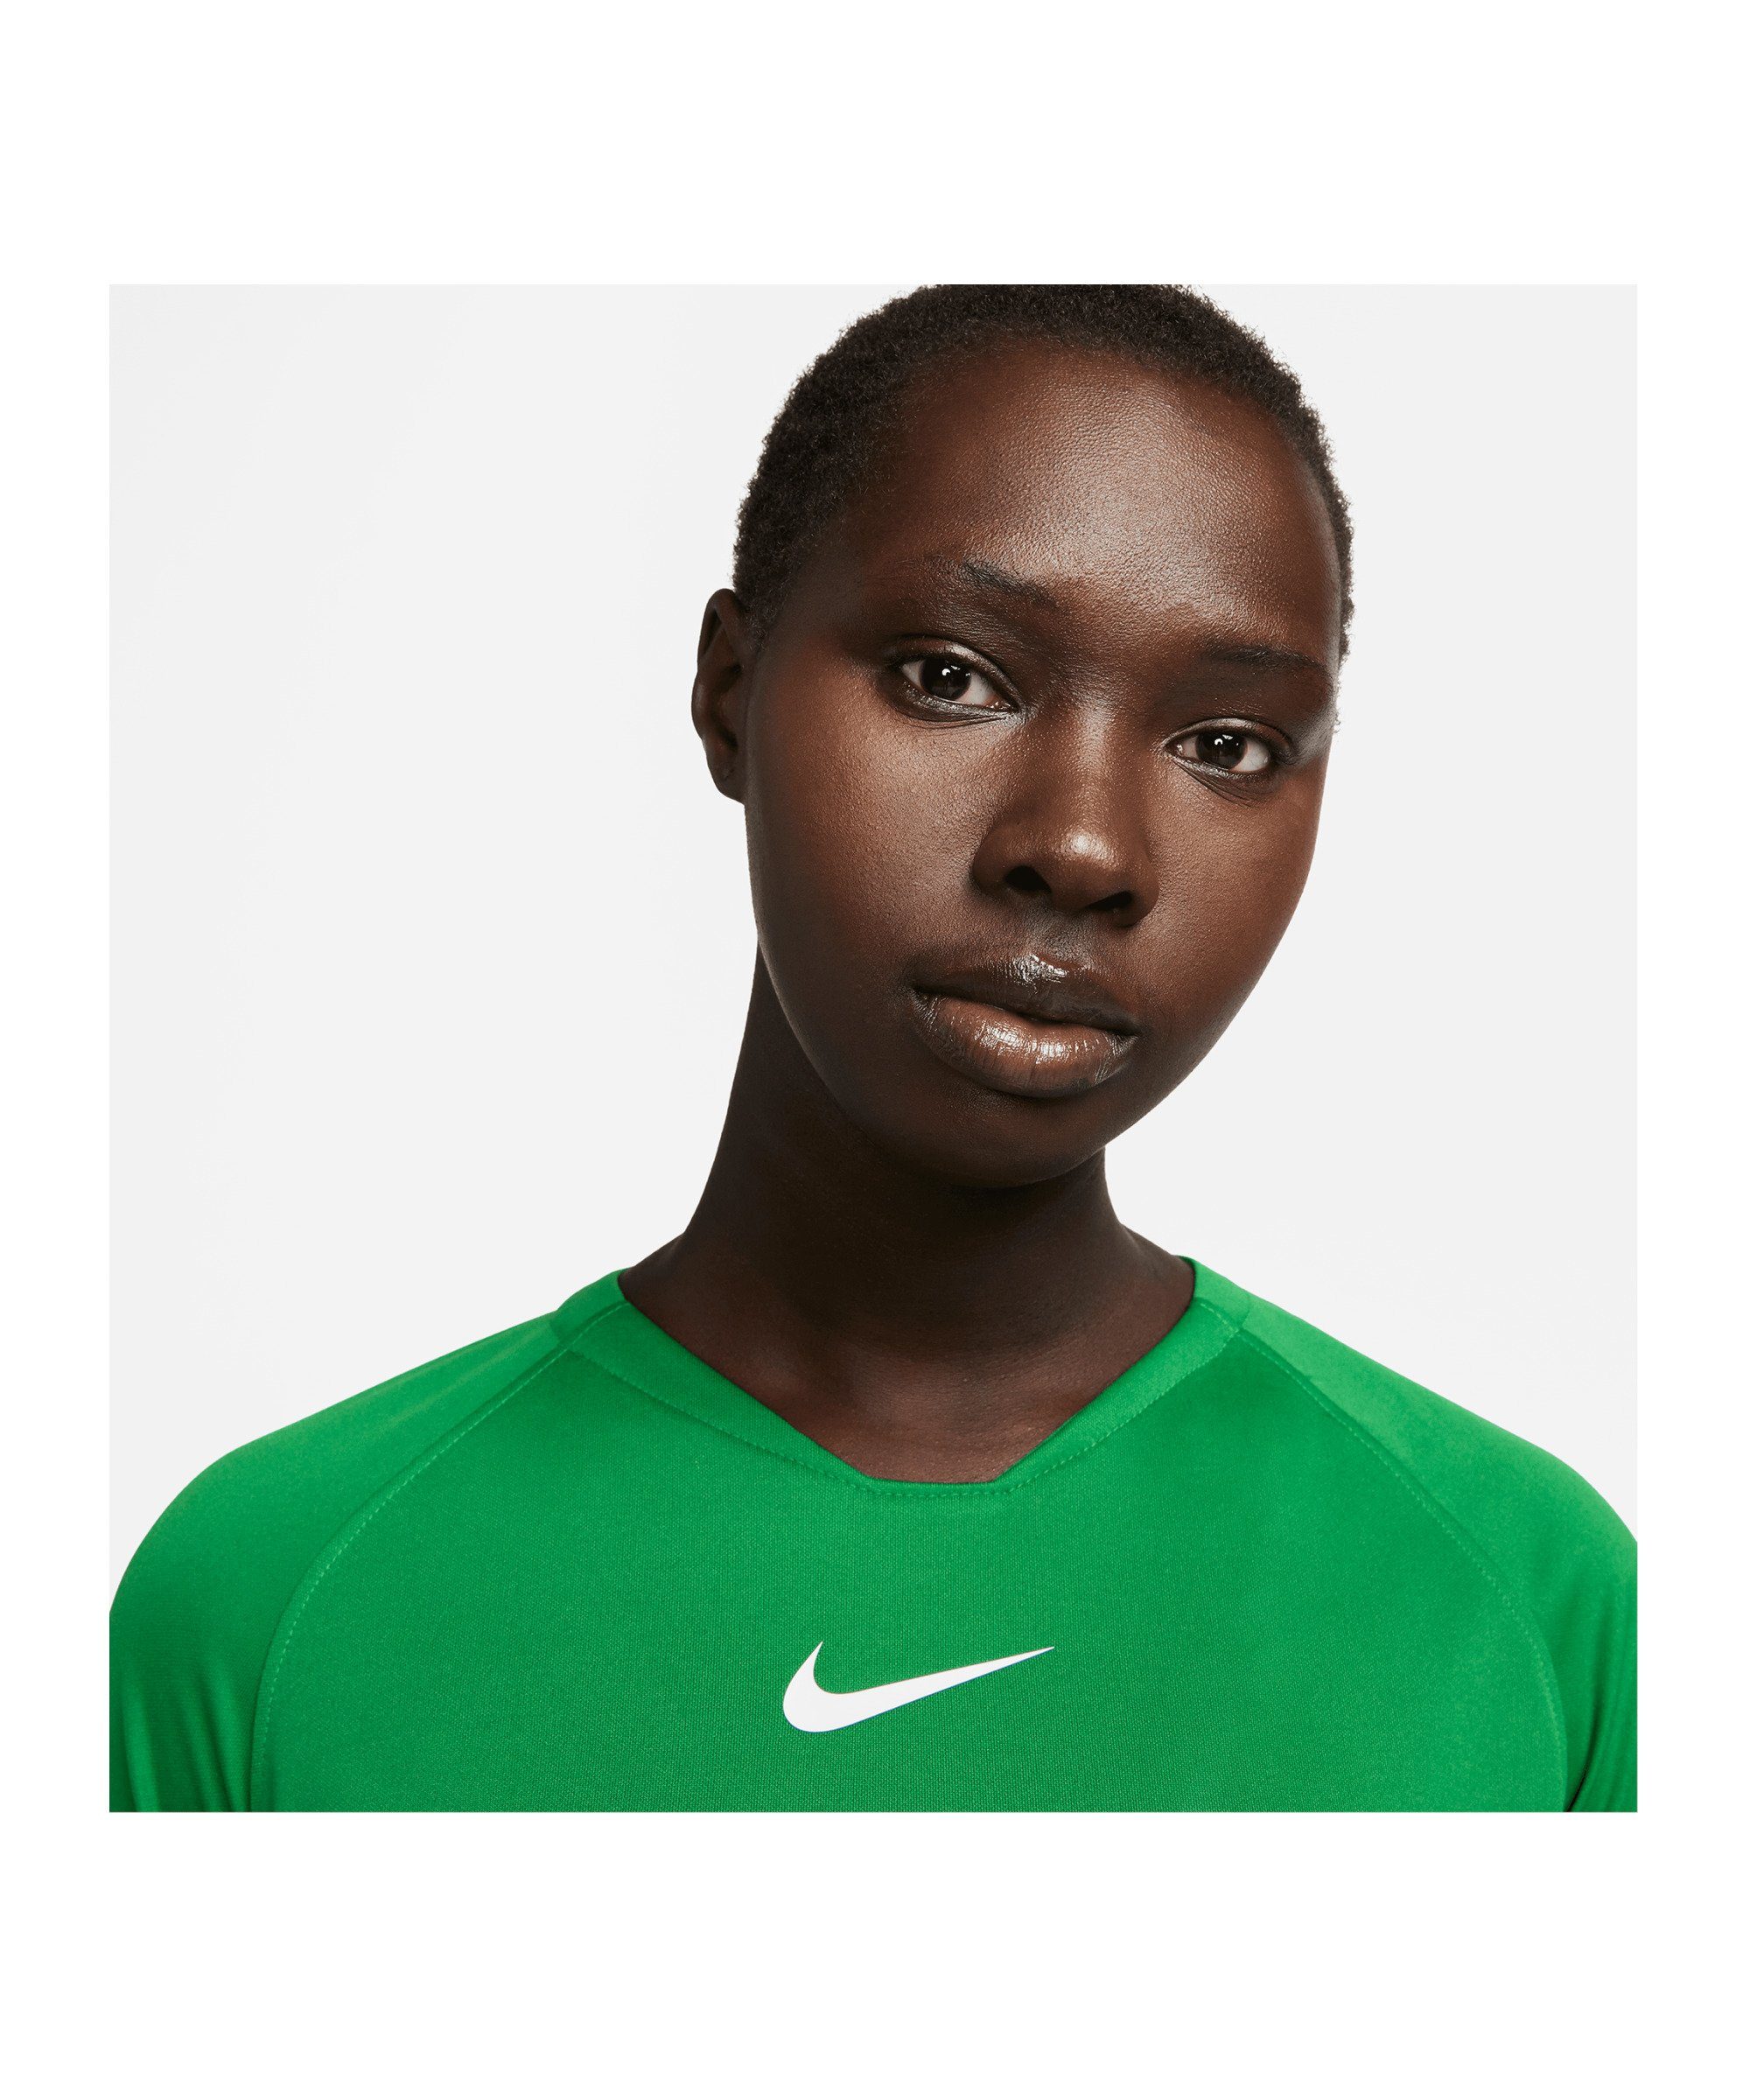 Damen Layer Nike default First Funktionsshirt gruenweiss Park